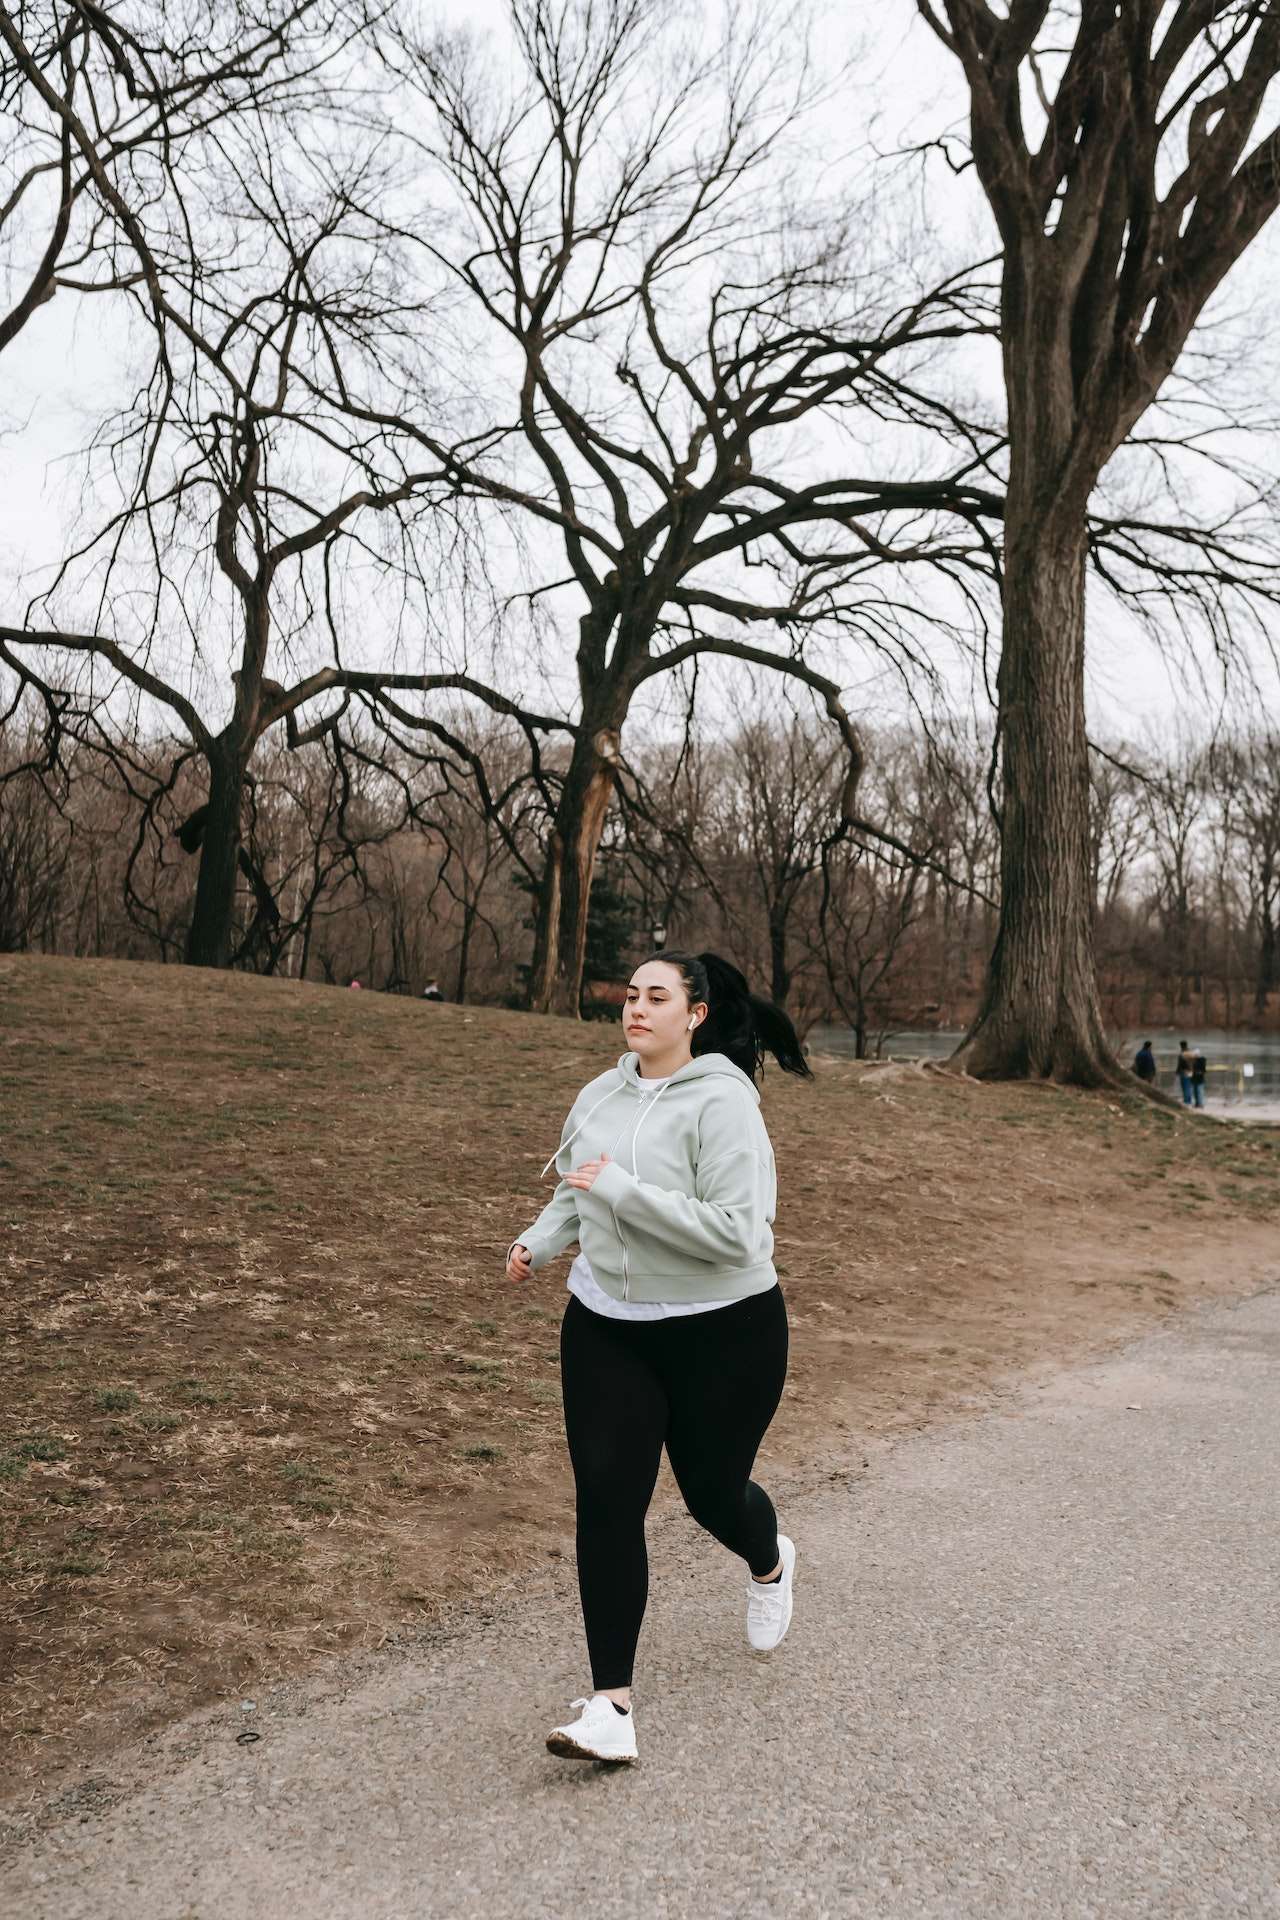 Plump sportswoman jogging in leafless park 